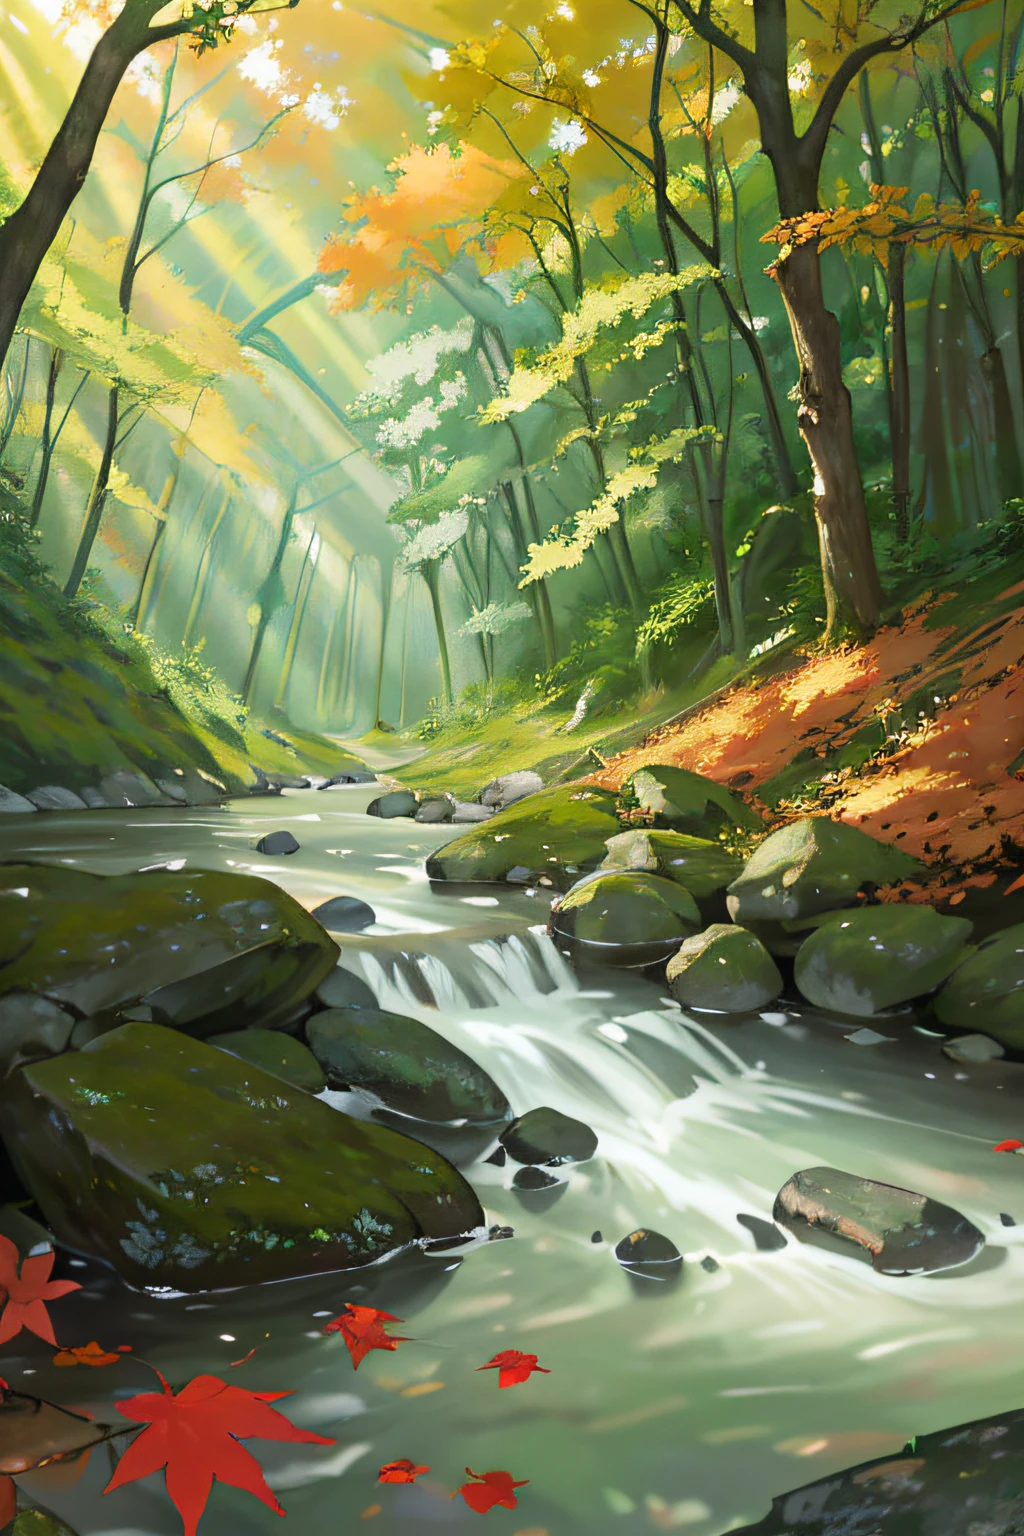 ป่า ลำธาร แม่น้ำ วิญญาณ แสงที่สวยงาม ใบไม้ ความงามตามธรรมชาติ ปาฏิหาริย์ ใบไม้สีแดง ใบไม้สีเหลือง ป่าสีเขียว เอฟเฟกต์แสง บรรยากาศลึกลับ ผิวน้ำ หินแม่น้ำ เงา องค์ประกอบ ประสบการณ์นอกโลก